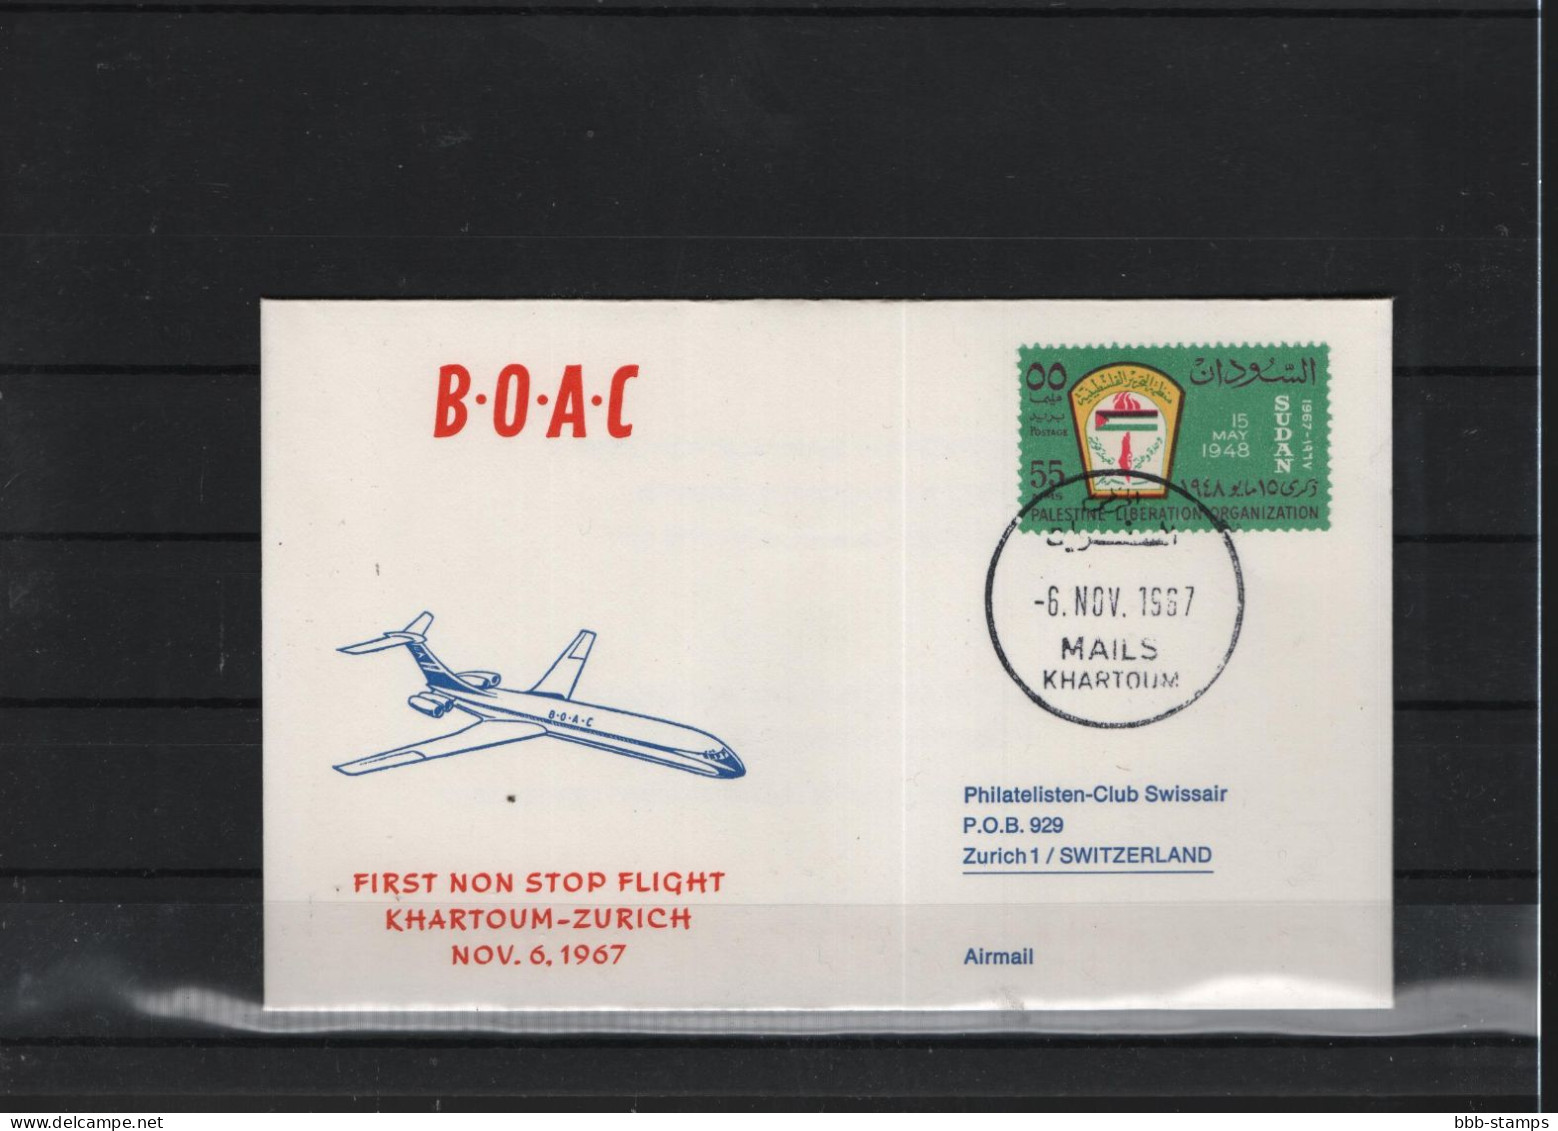 Schweiz Luftpost FFC BOAC 6.11.1967 Khartoum - Zürich - First Flight Covers